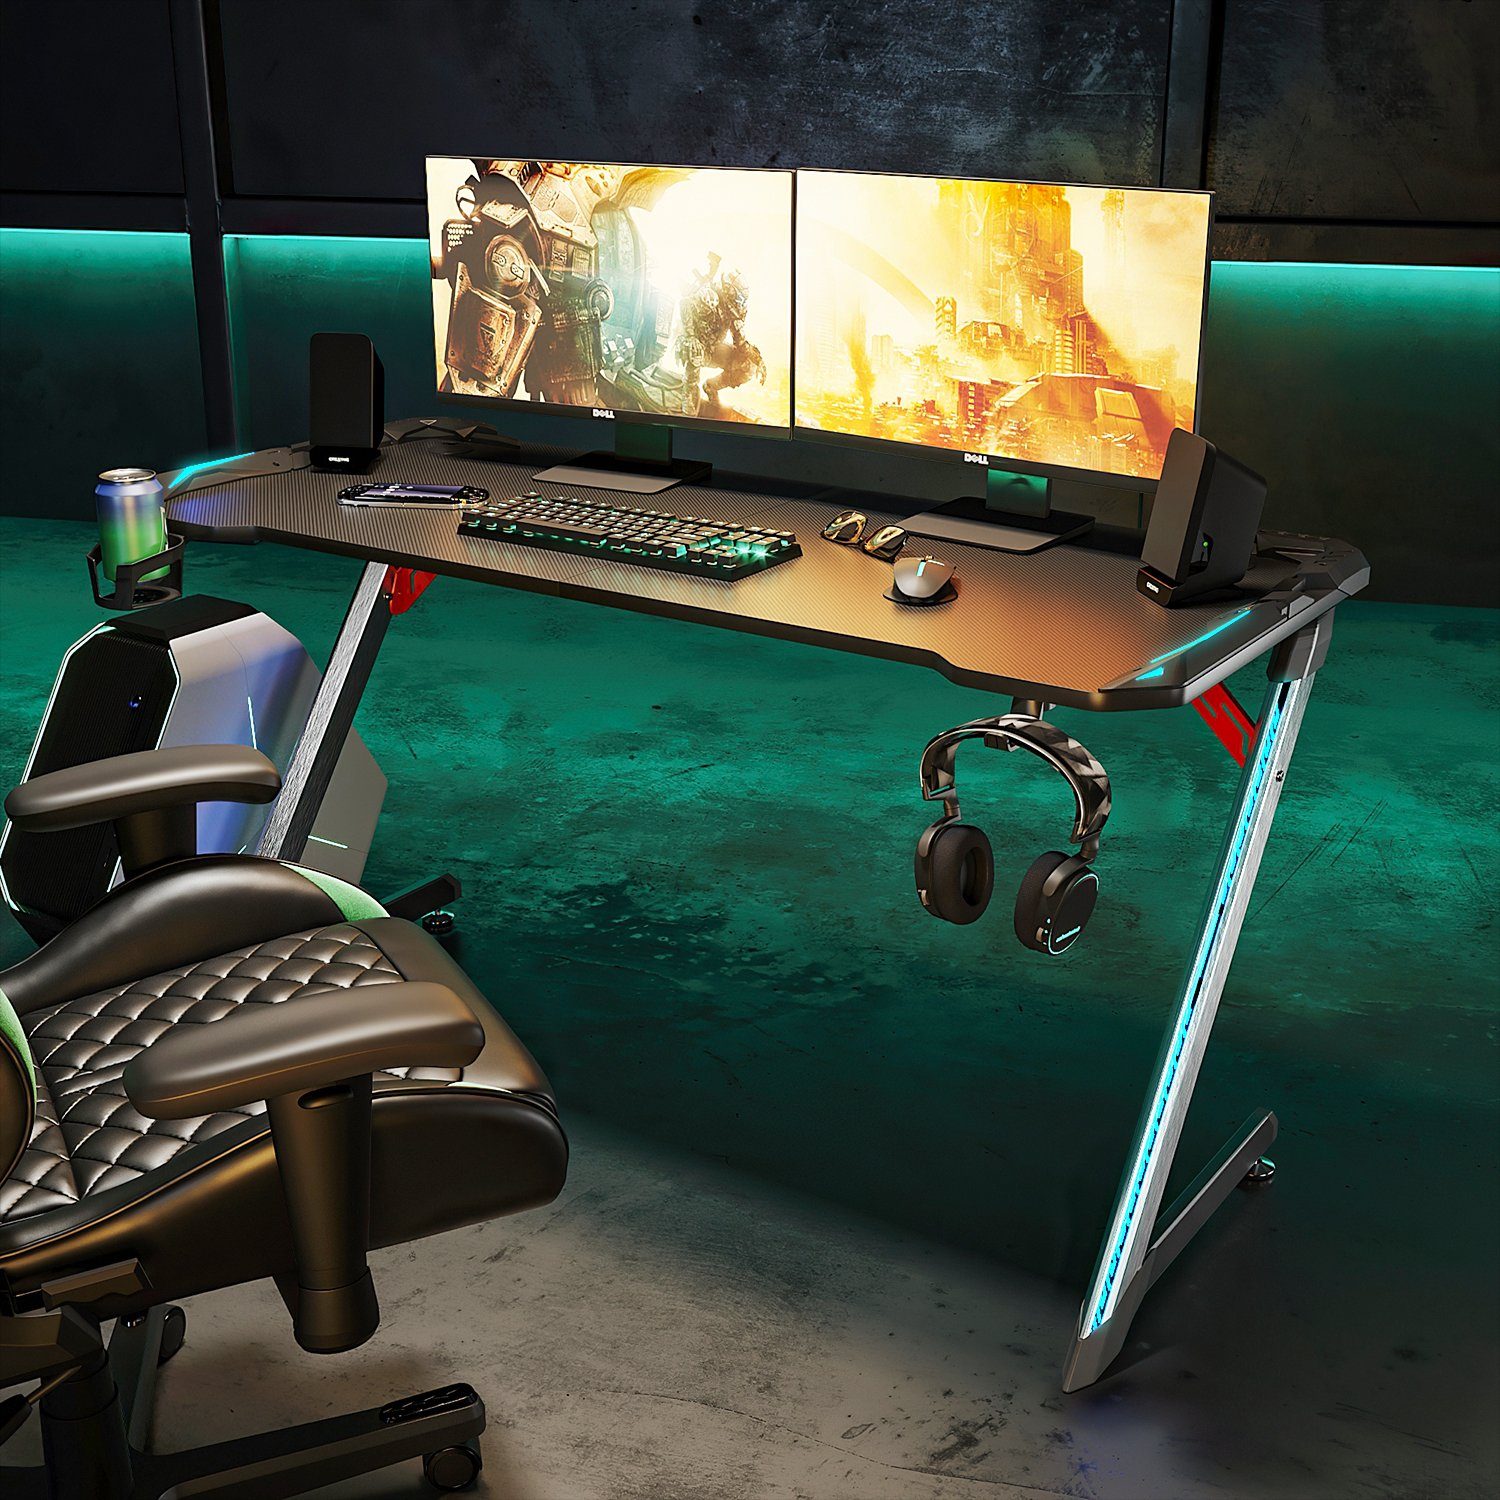 SONNI Gamingtisch RGB Gaming Tisch mit LED Beleuchtung, Breite 120cm/140cm | Computertische